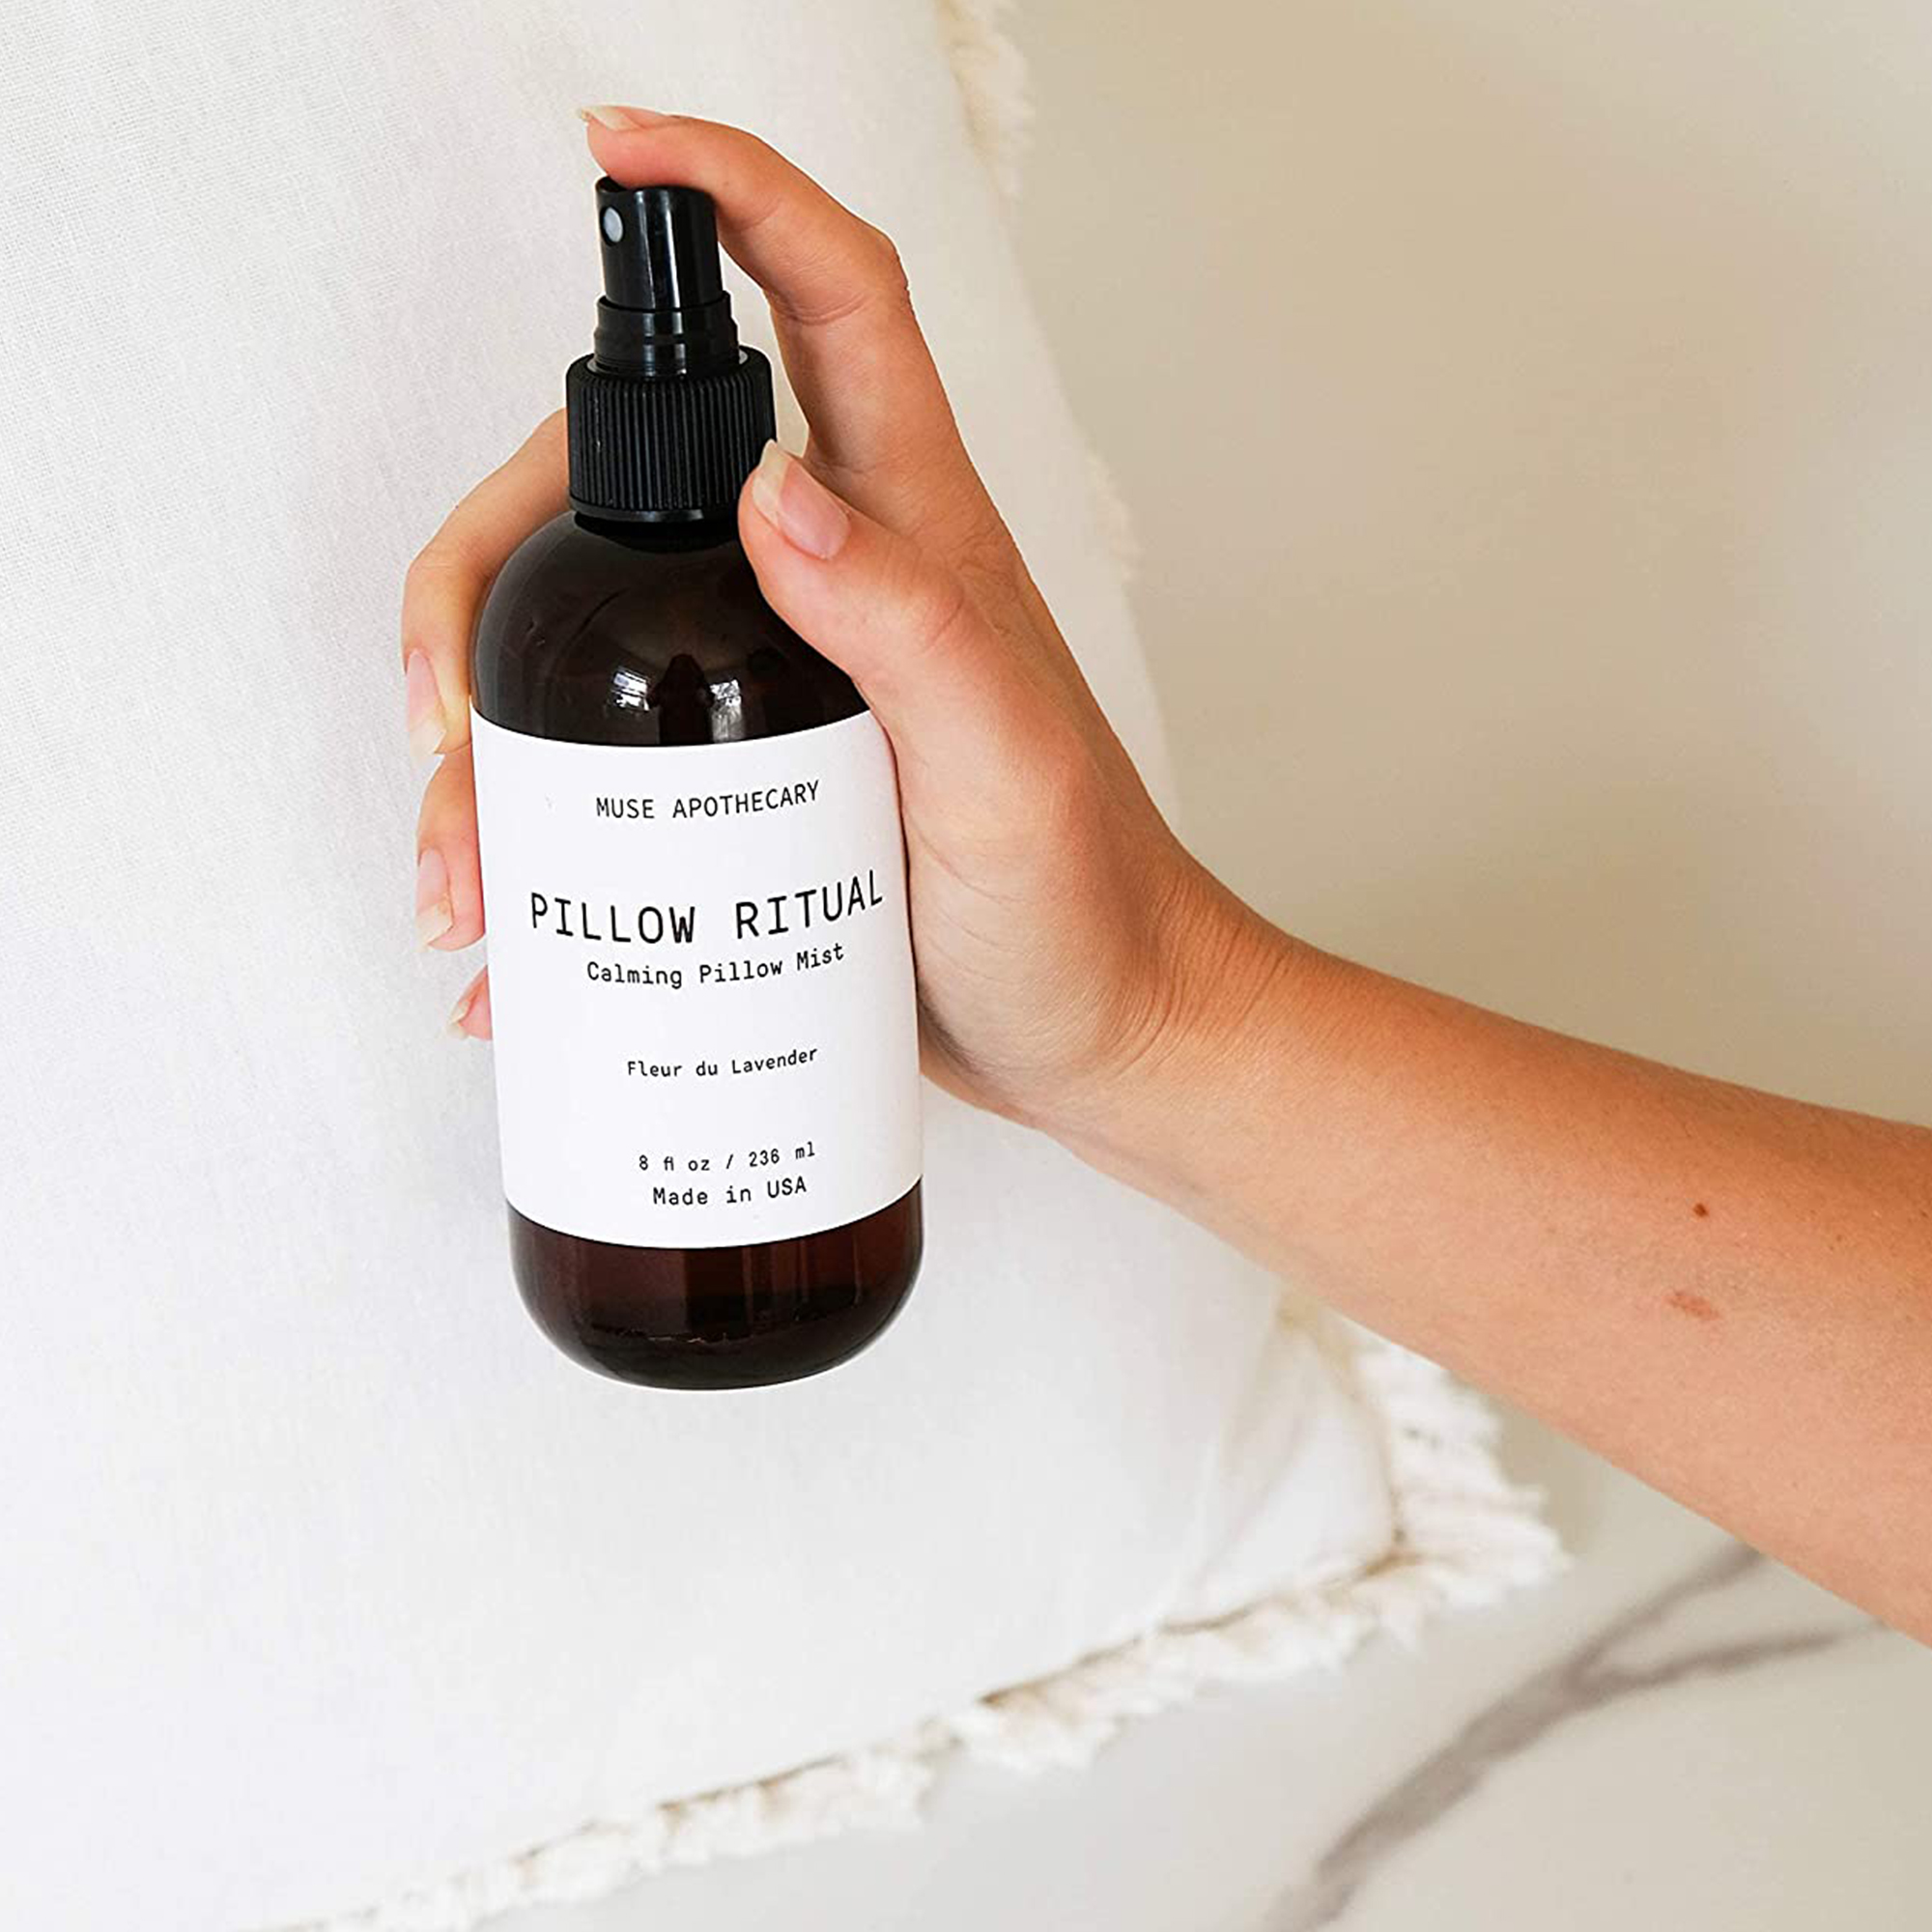 Muse Apothecary Pillow Ritual Luxury Aromatherapy Pillow Mist Sleep Spray  with Essential Oils, 8 Oz Fleur du Lavender 